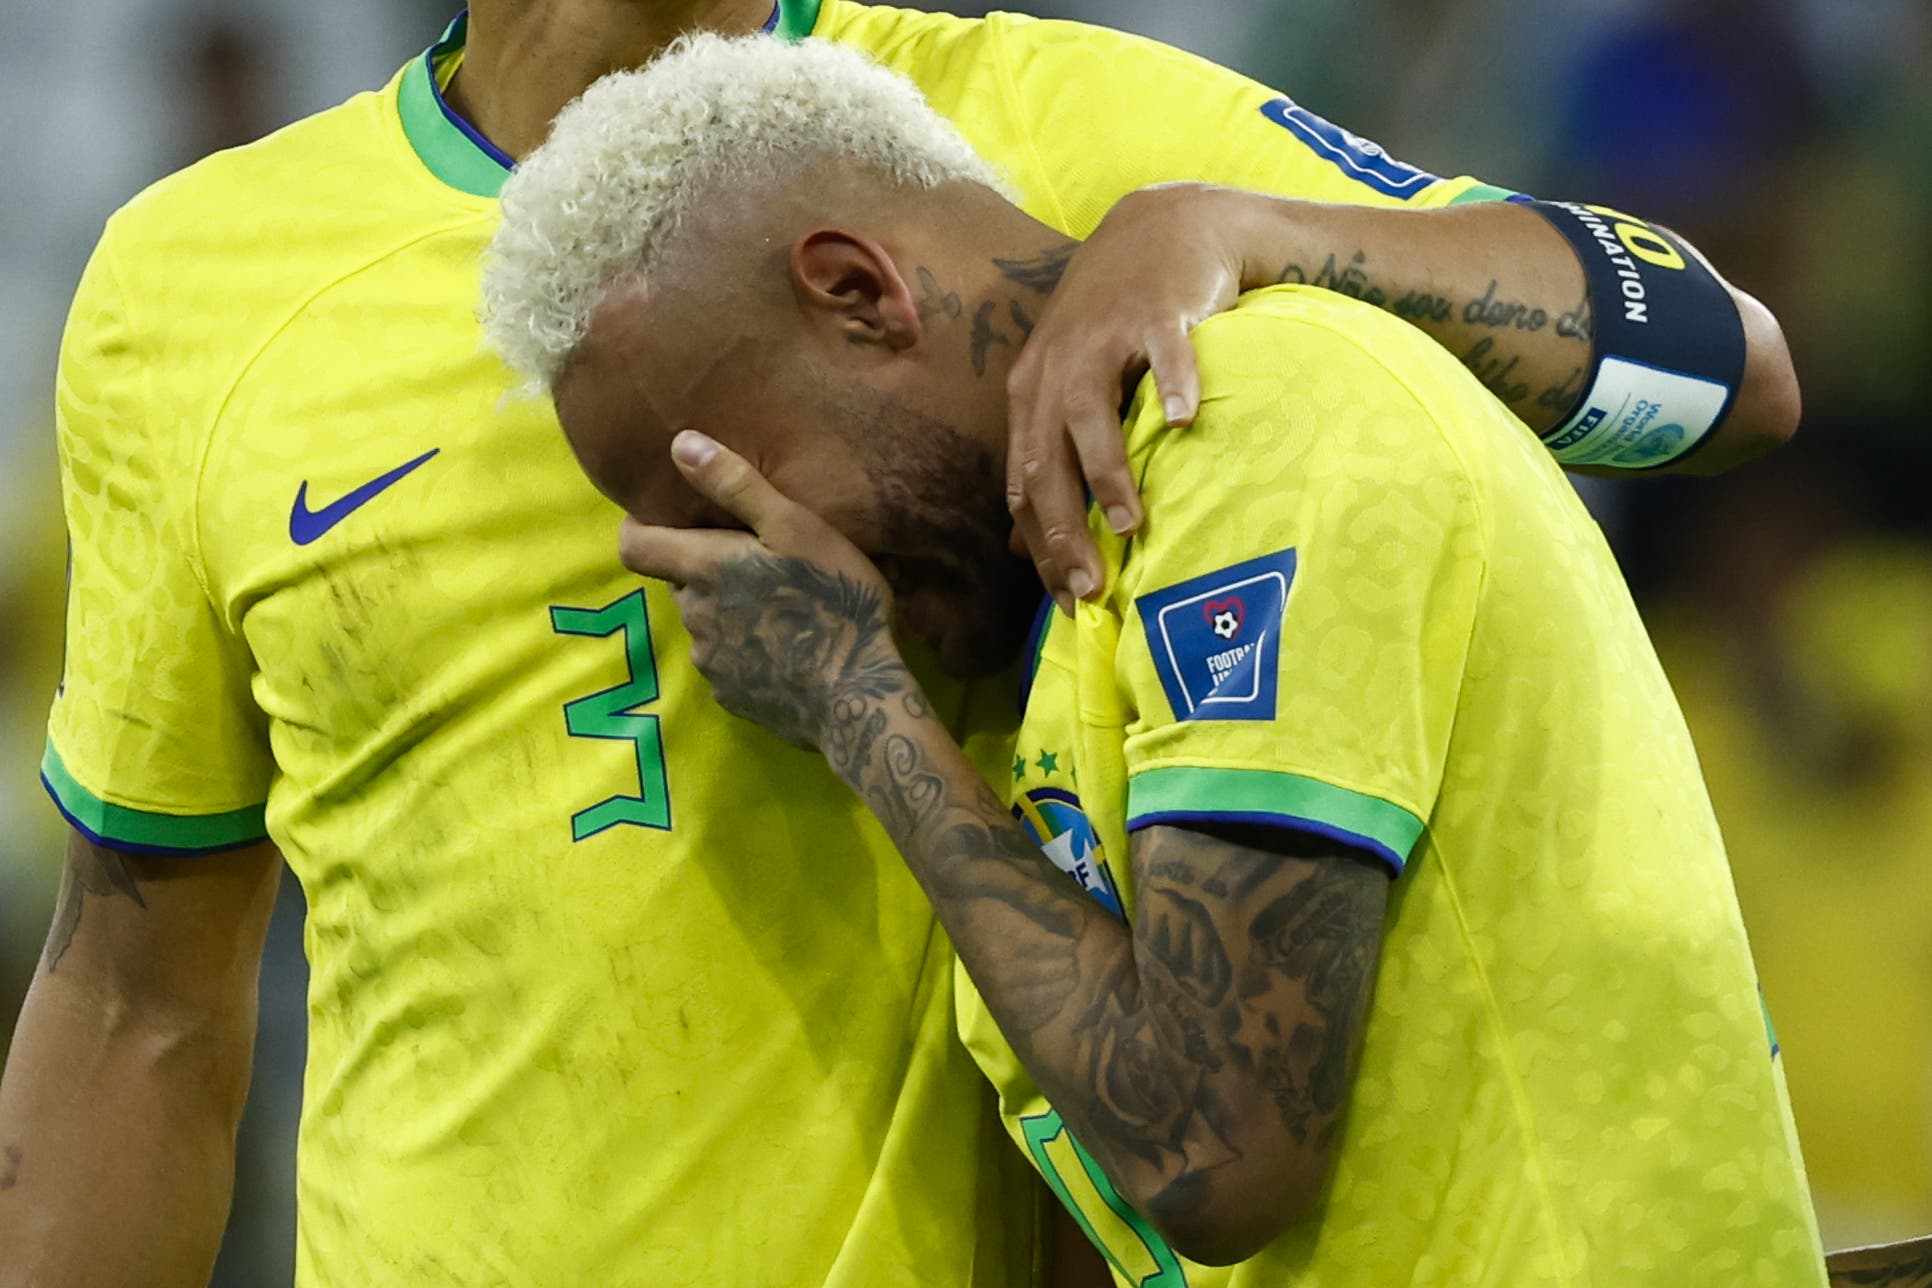 “Estoy destruido y dolerá por mucho tiempo”, afirma Neymar tras eliminación